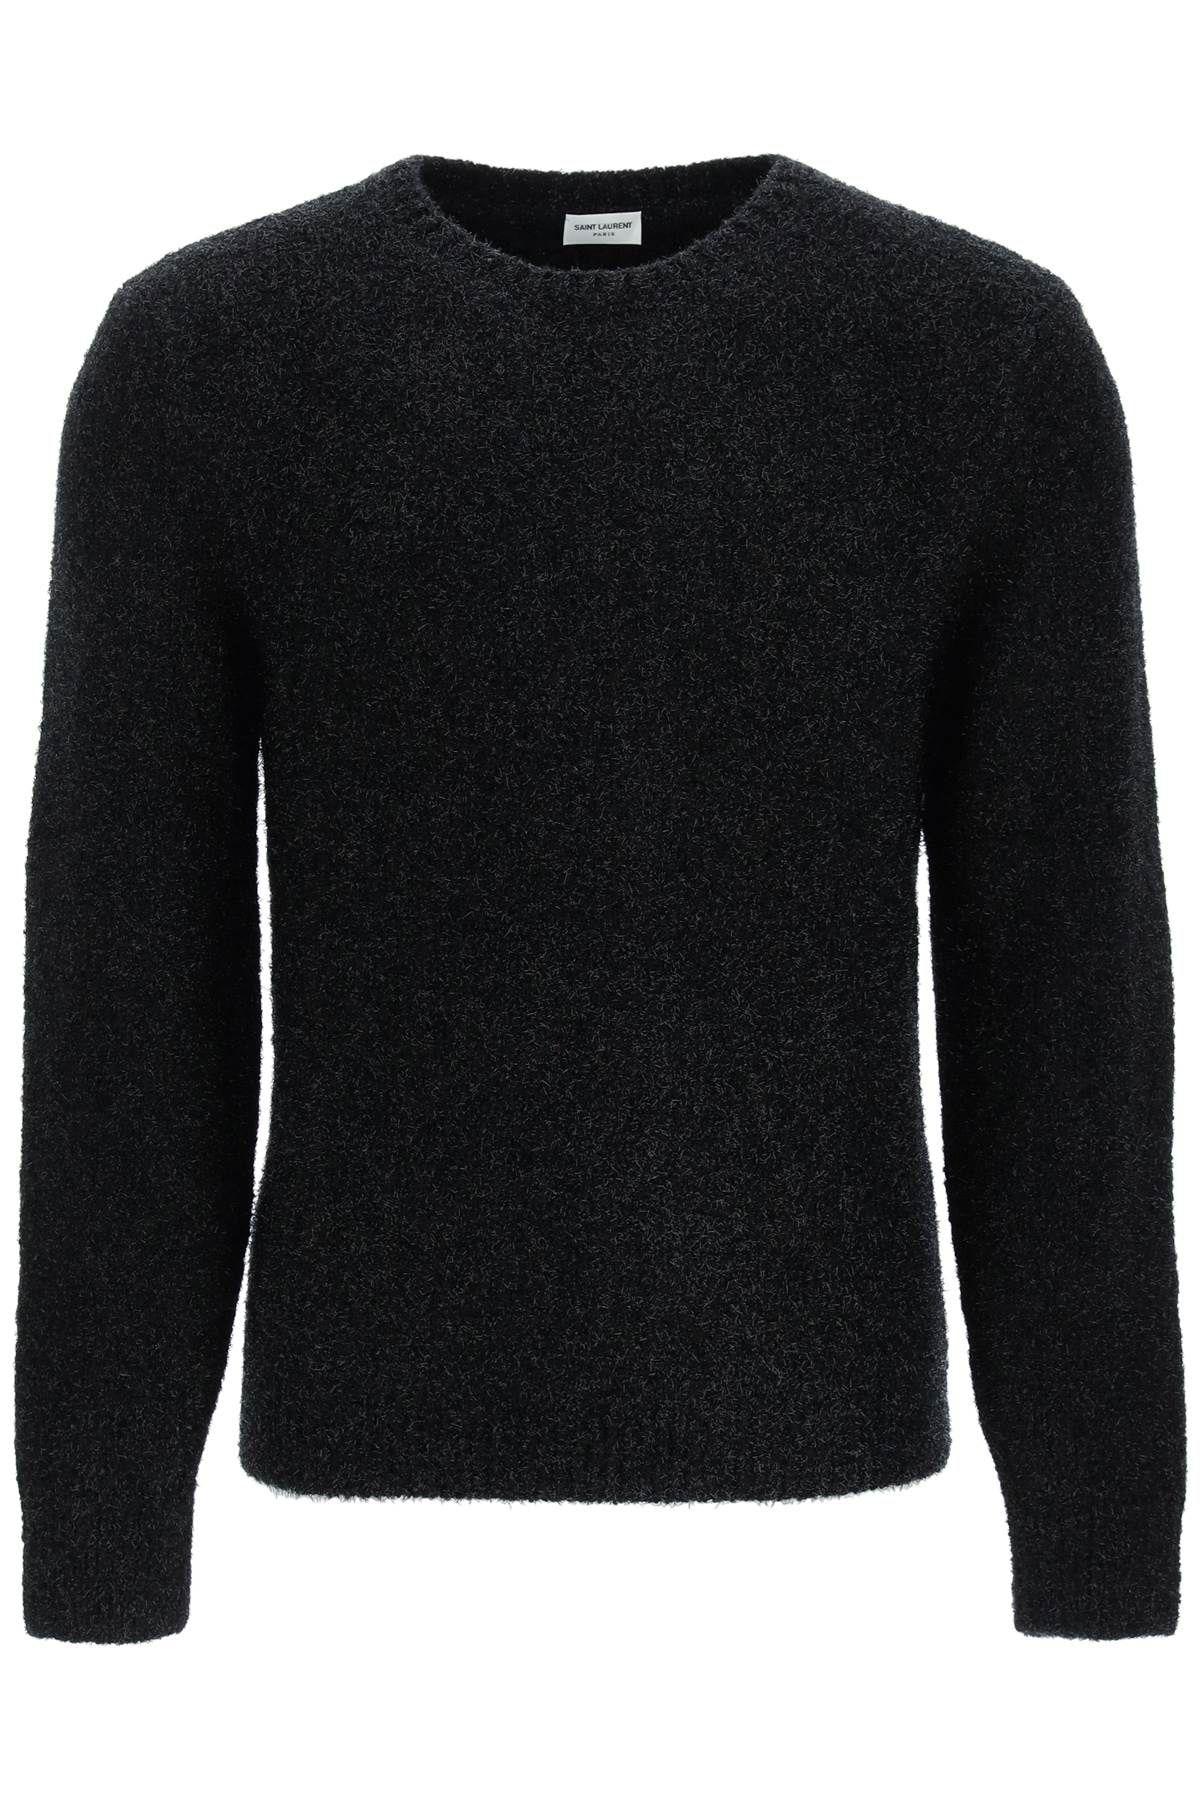 Saint Laurent Lurex Knit Sweater